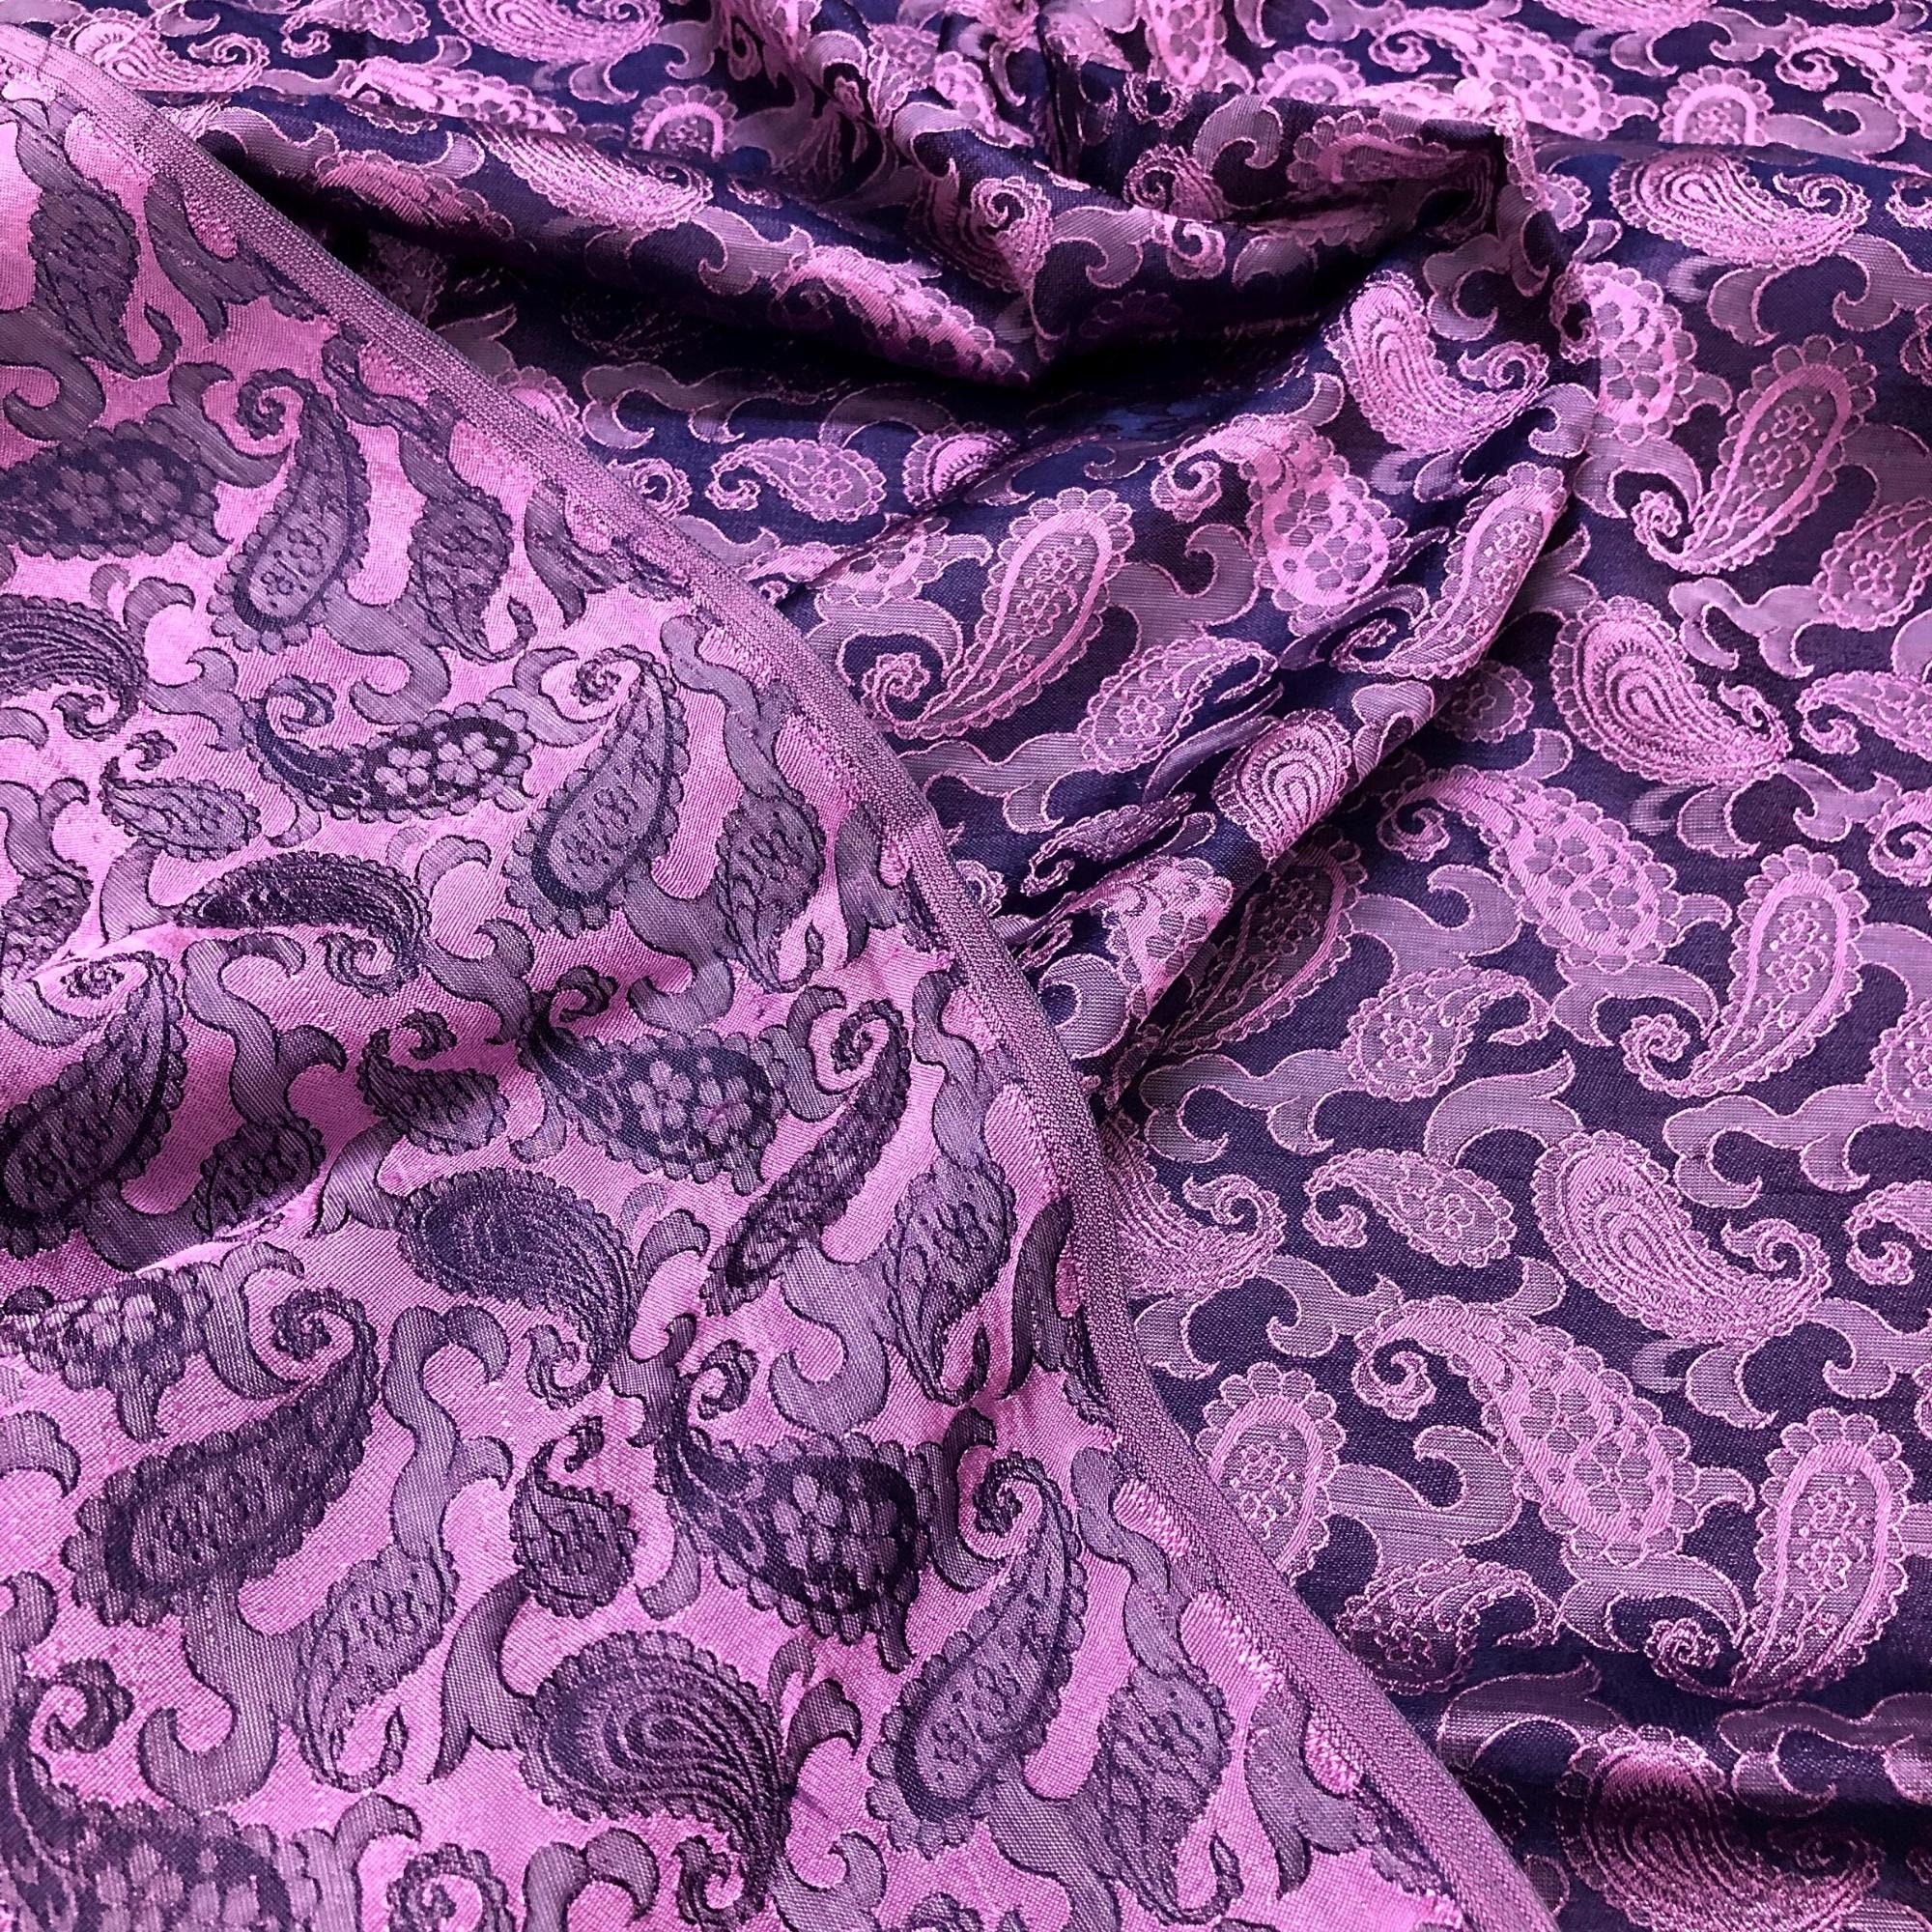 Vải Lụa Tơ Tằm Palacesilk đuôi công màu tím may áo dài và các loại váy áo, khổ rộng 90, dệt thủ công, bền đẹp &amp; thoáng mát